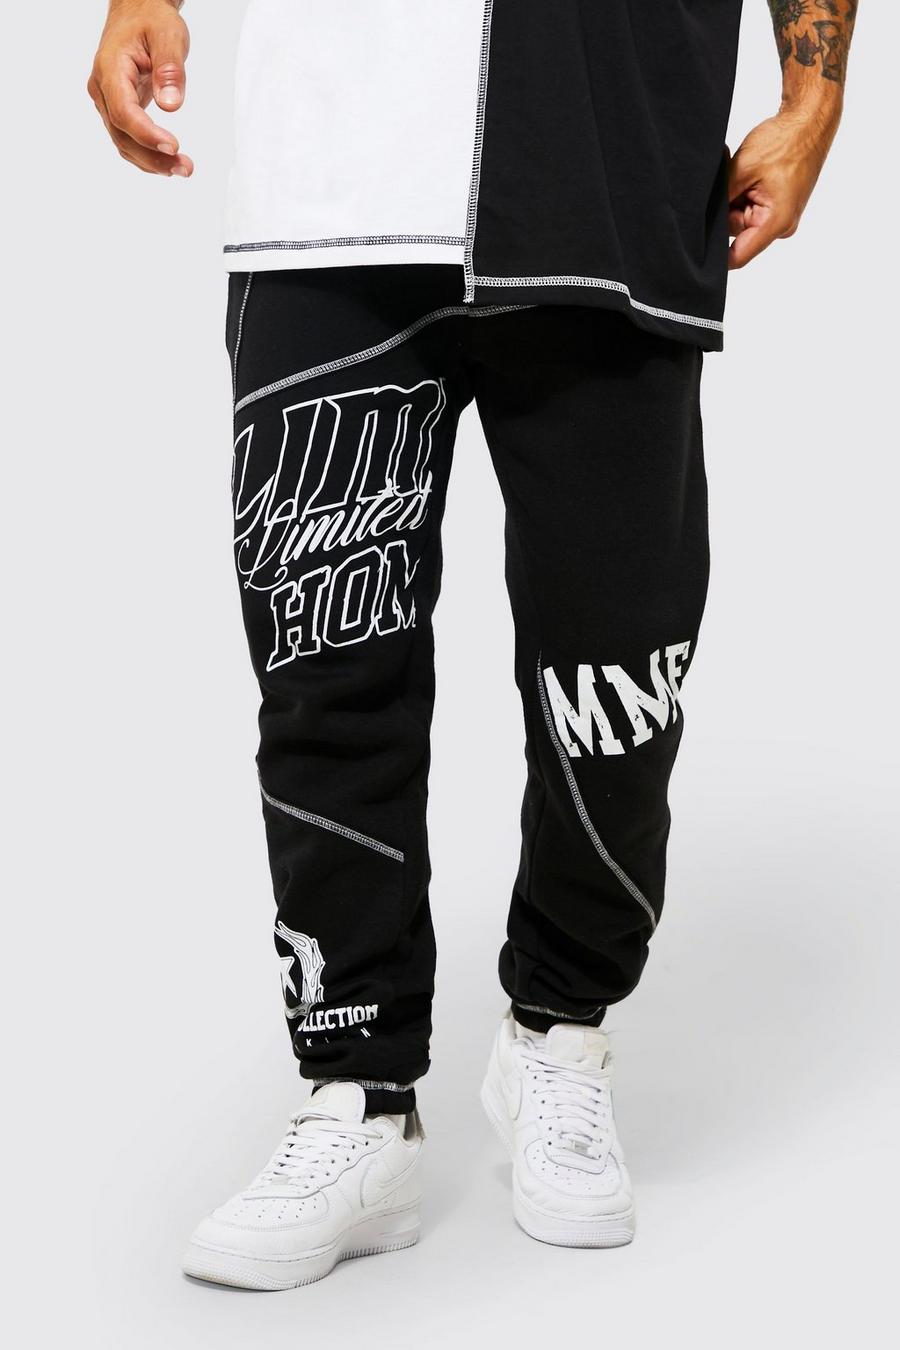 Pantaloni tuta Regular Fit effetto patchwork con grafica stile college, Black nero